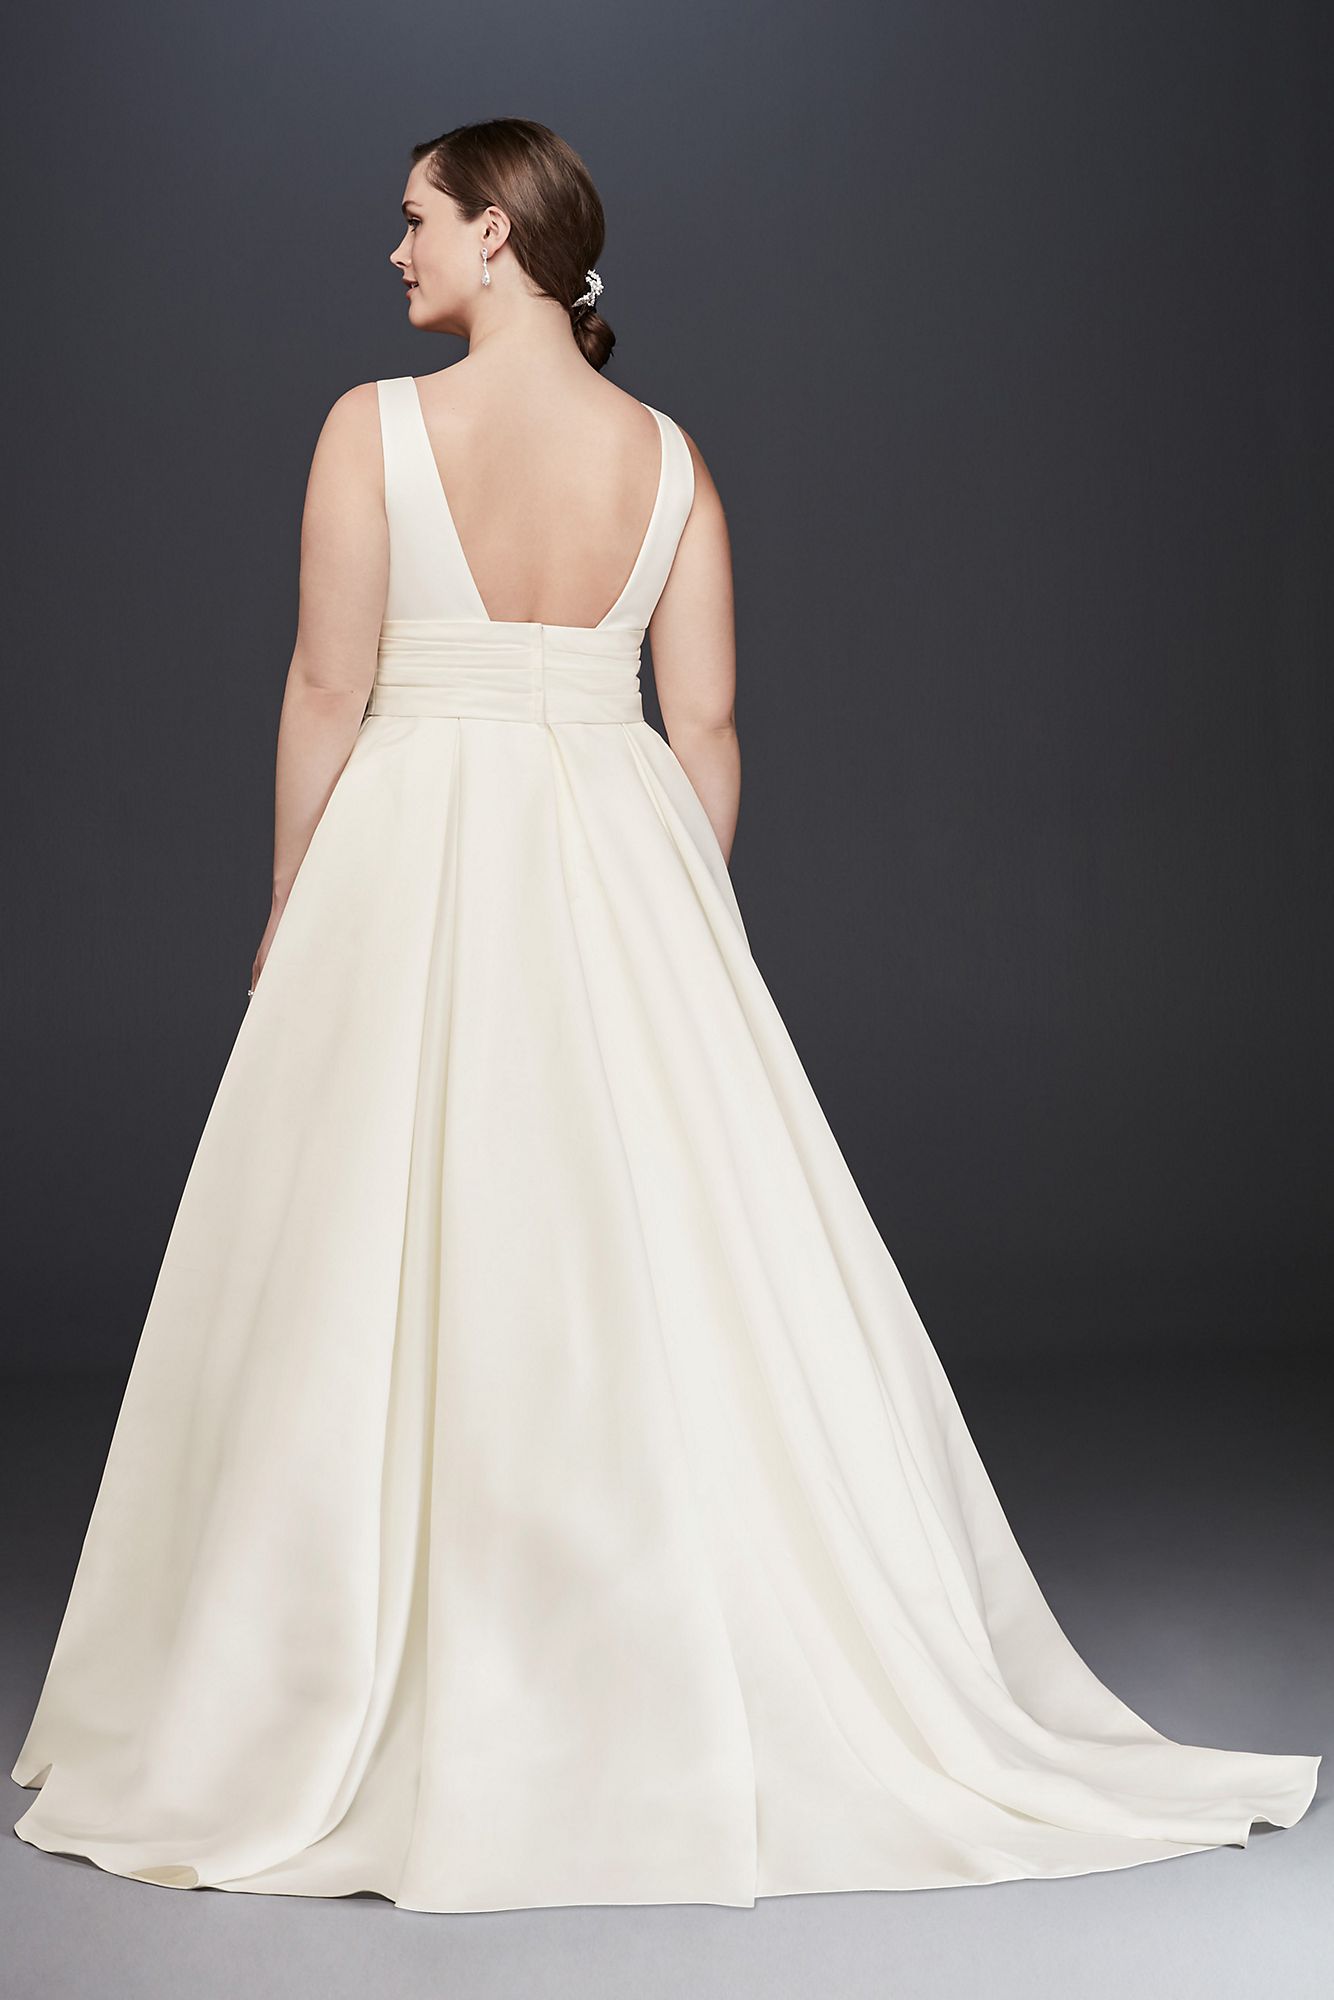 Satin Cummerbund Plus Size Wedding Dress   Collection 9V3848